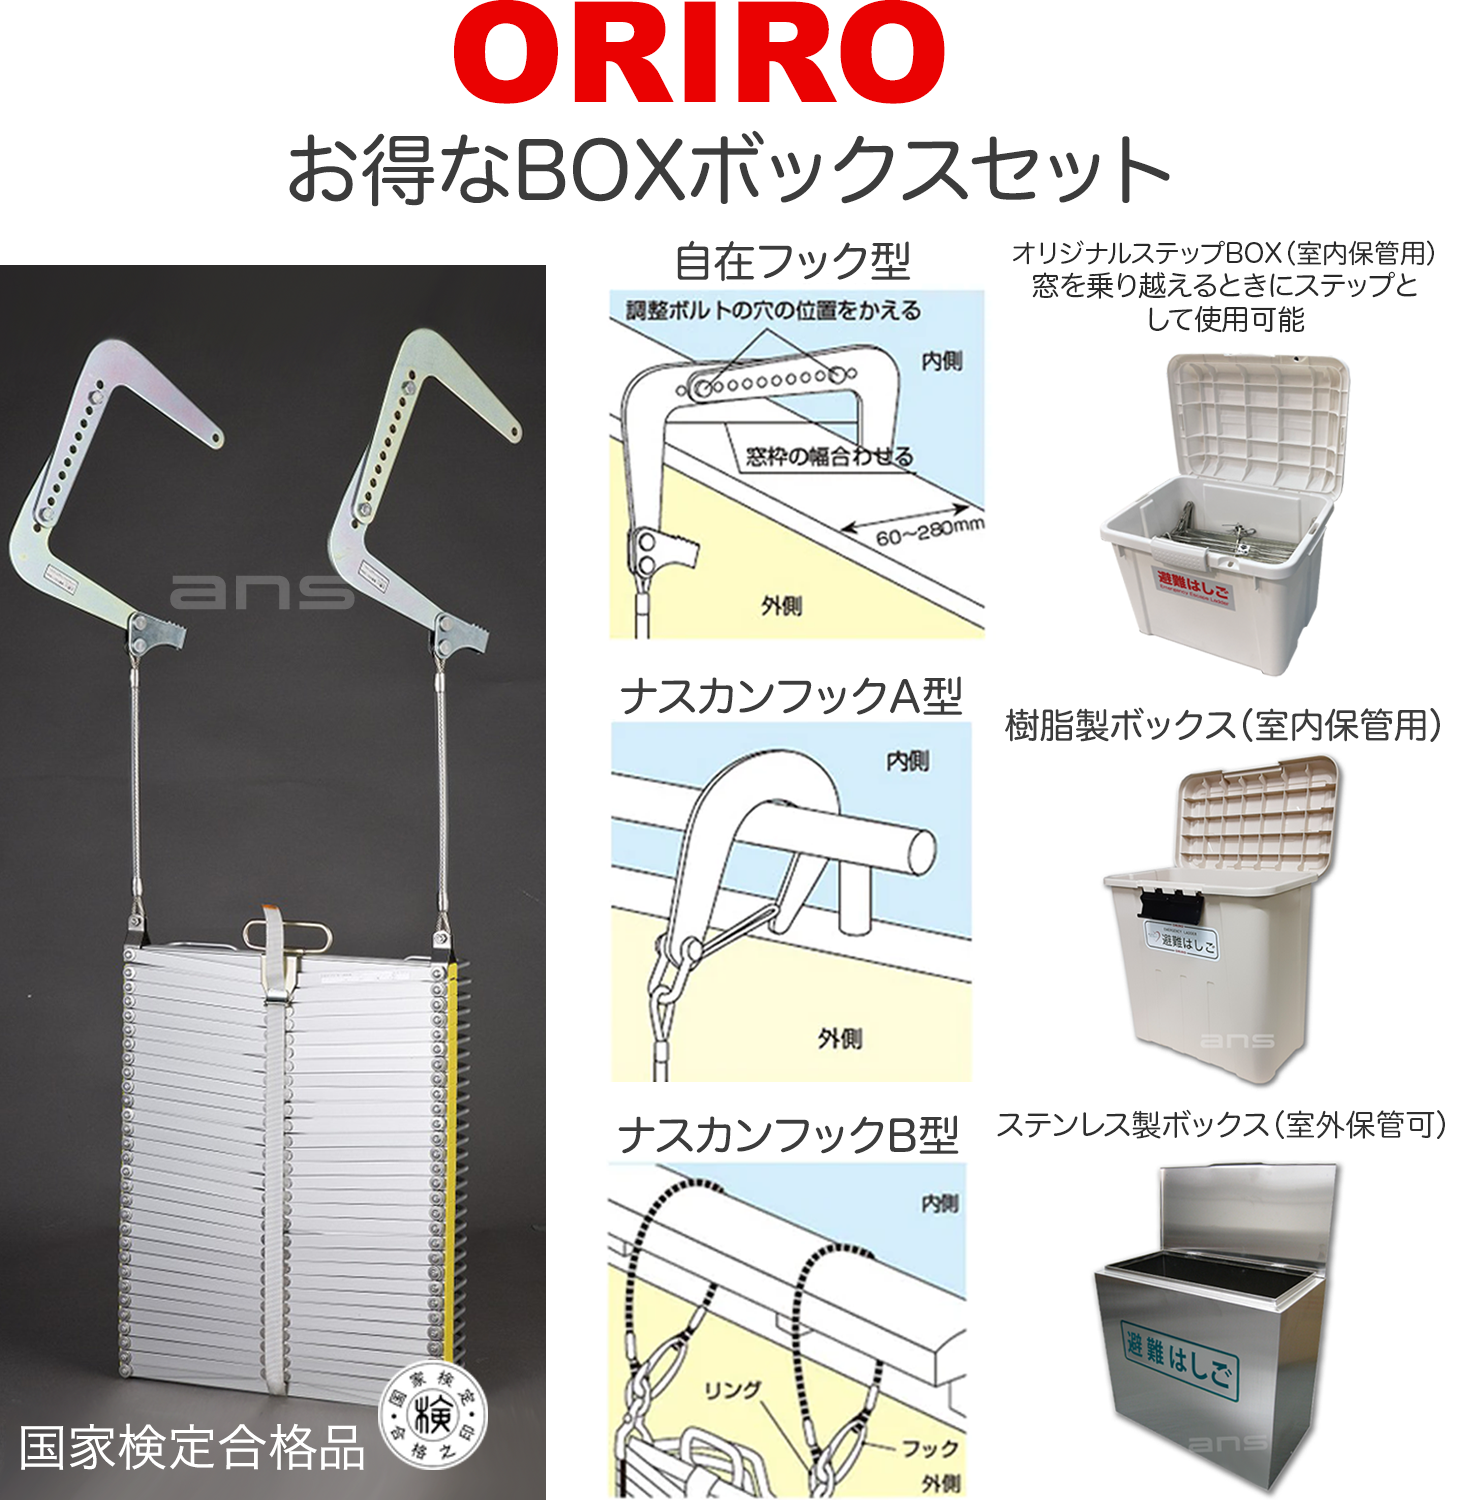 お得なボックスセット。ORIROアルミ製避難はしご 6型 + 収納ボックス。国家検定合格品。設置可能範囲の高さ：自在フック6,250mmまで　 ナスカンA 6,640mmまで　ナスカンB 6,660mmまで